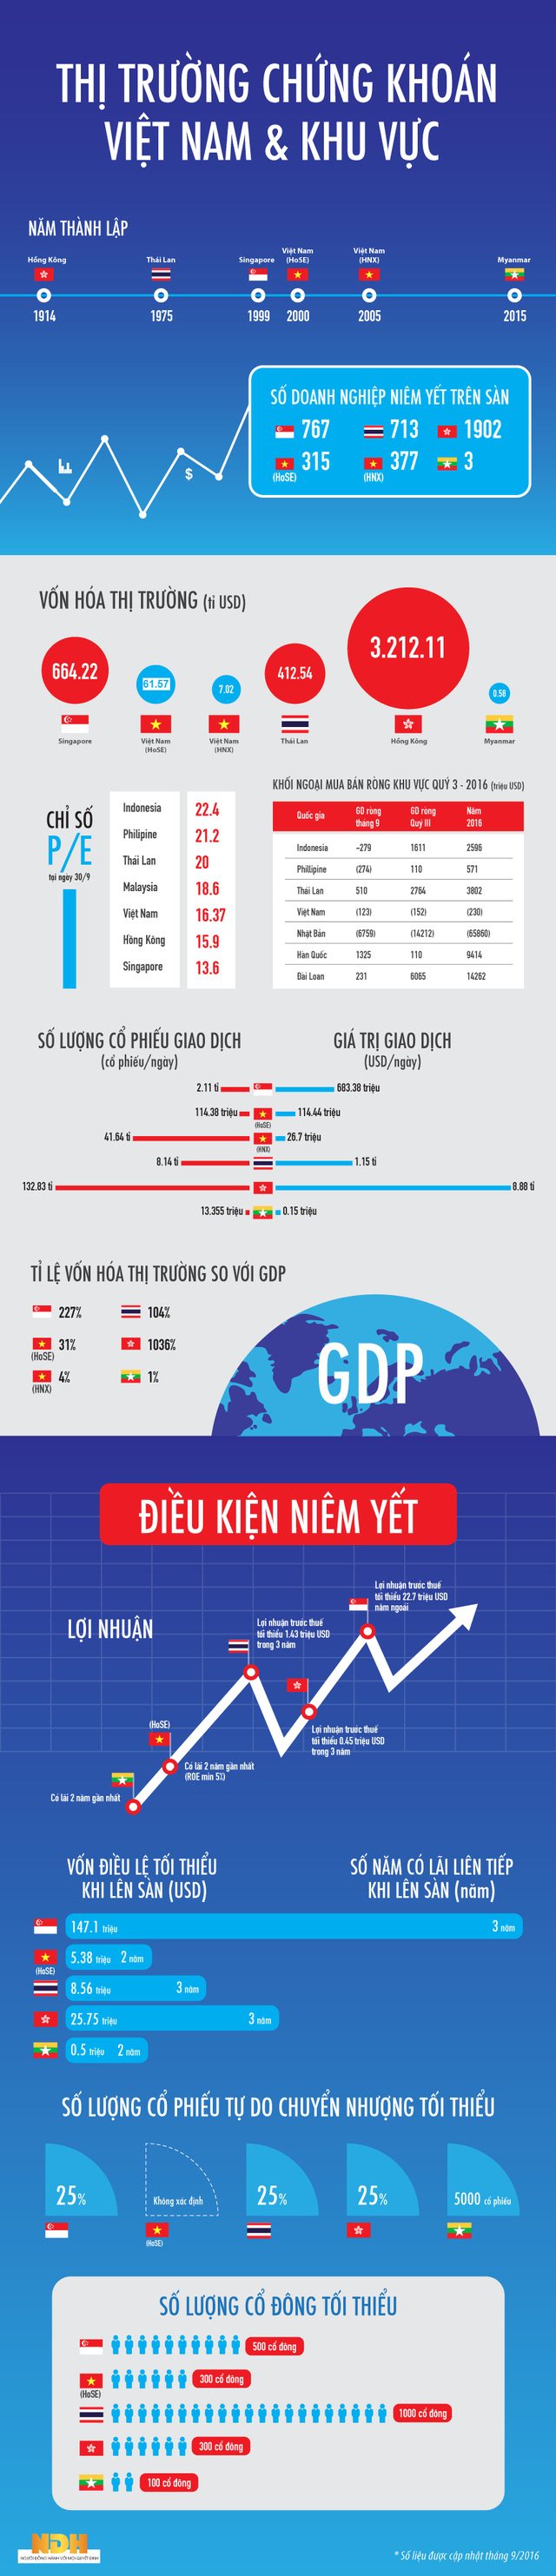 [Infographic] Thị trường chứng khoán Việt Nam đang ở đâu trong khu vực? - Ảnh 1.